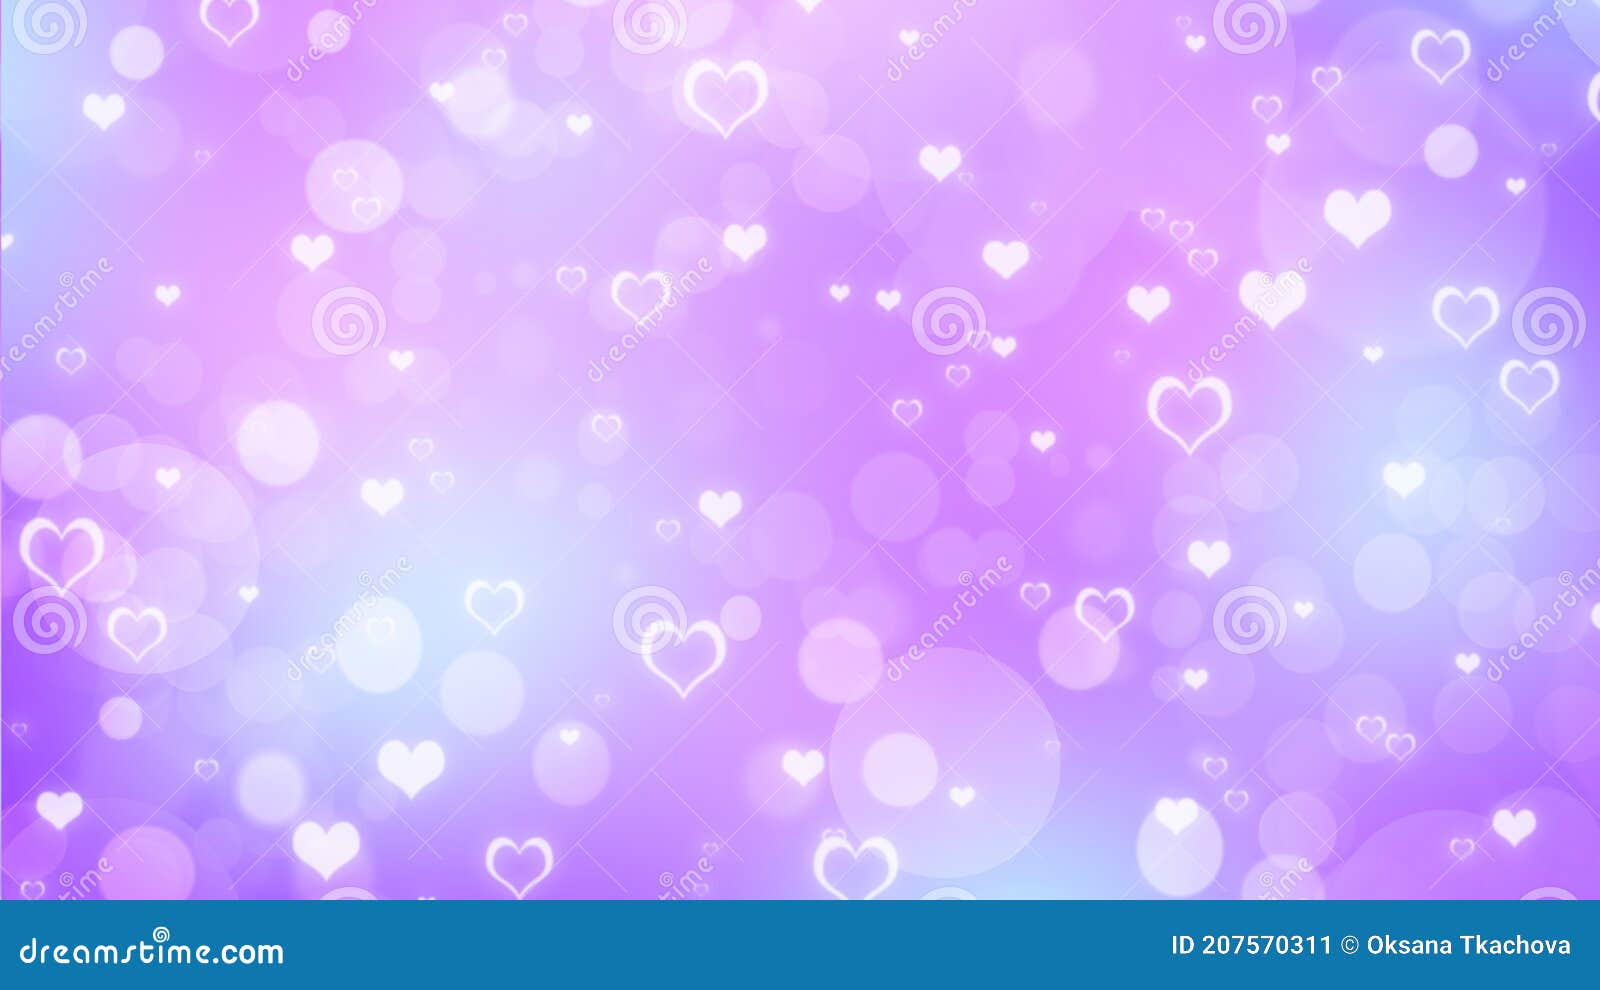 Những màu sắc tím, xanh dương và hồng nhạt lấp lánh trên nền đen, cùng trái tim trắng lung linh, sẽ đưa bạn vào một không gian mộng mơ và lãng mạn. Hãy xem ảnh để cảm nhận được sự tràn đầy cảm xúc này!